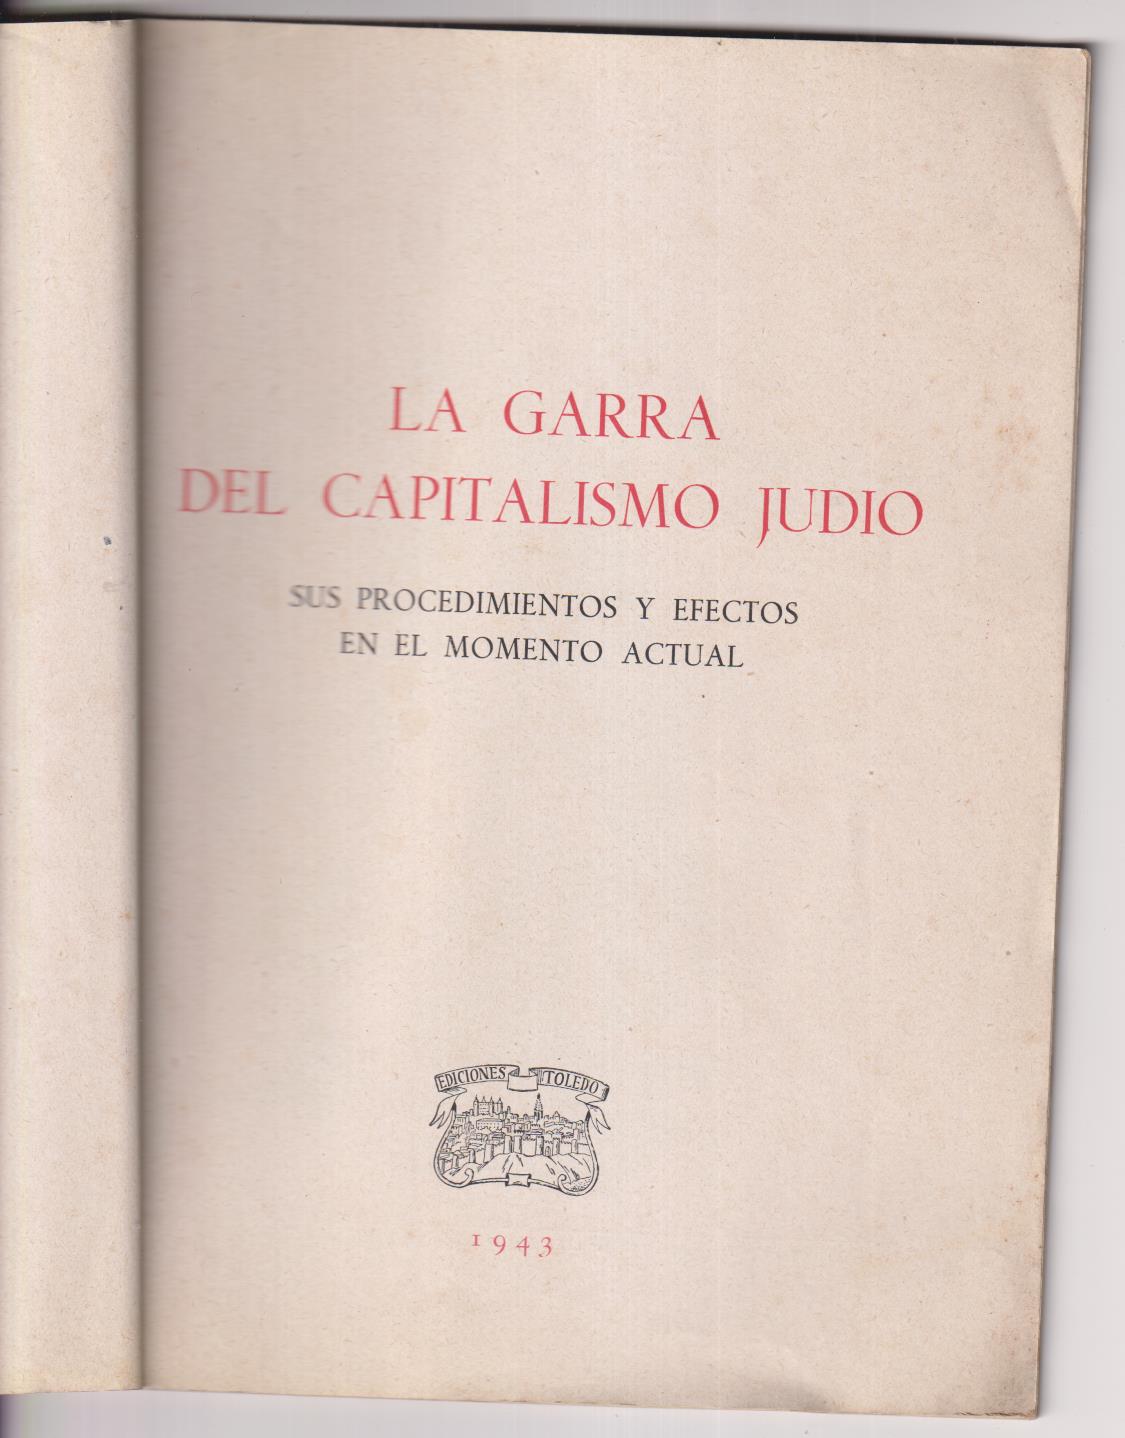 La Garra del Capitalismo Judío. Sus procedimientos y efectos en el momento Actual. Año 1943